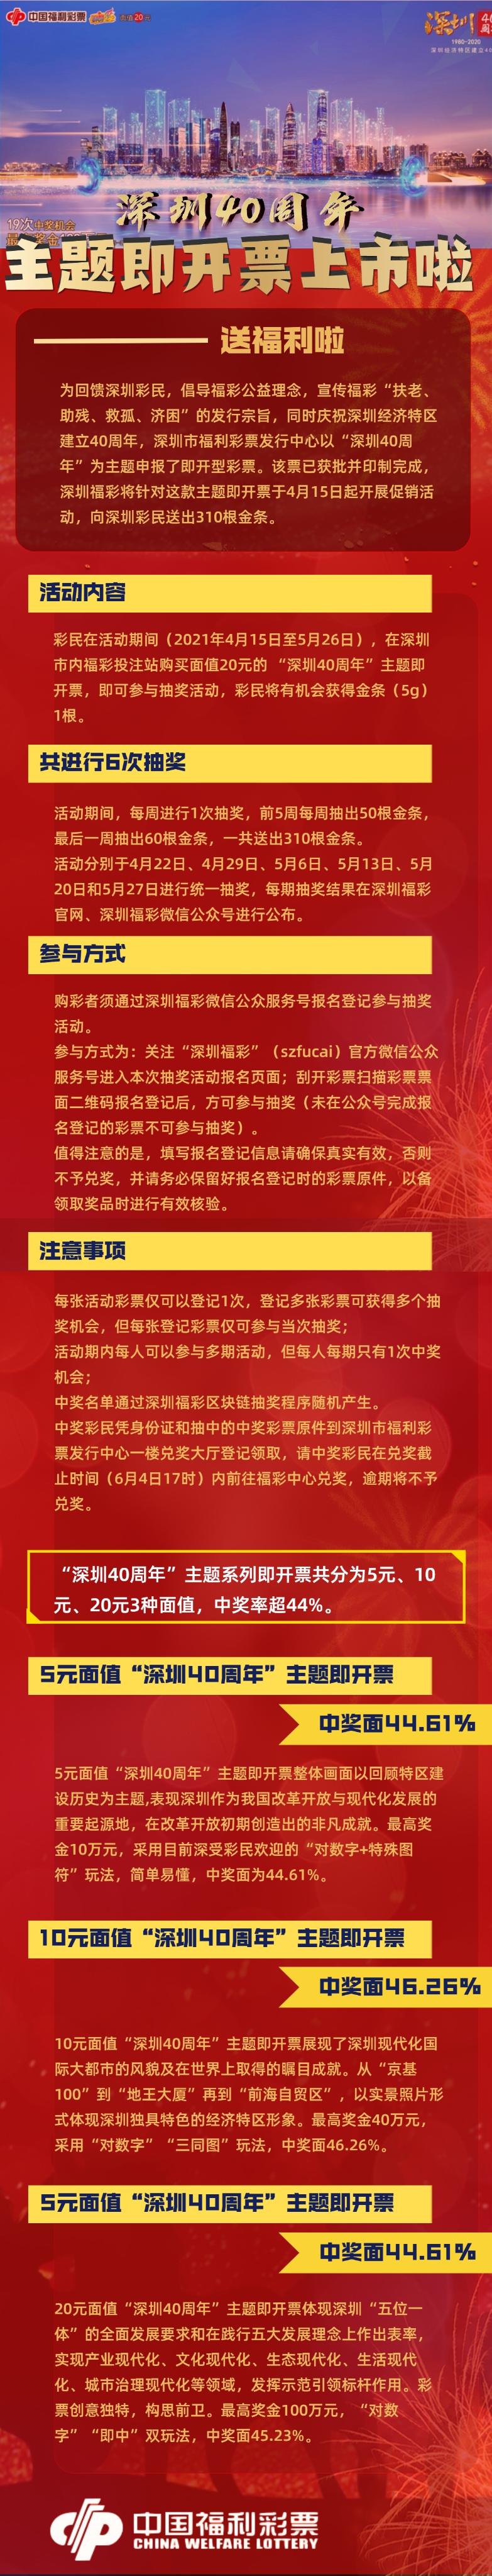 “深圳40周年”主题即开票上市 深圳福彩送出310根金条